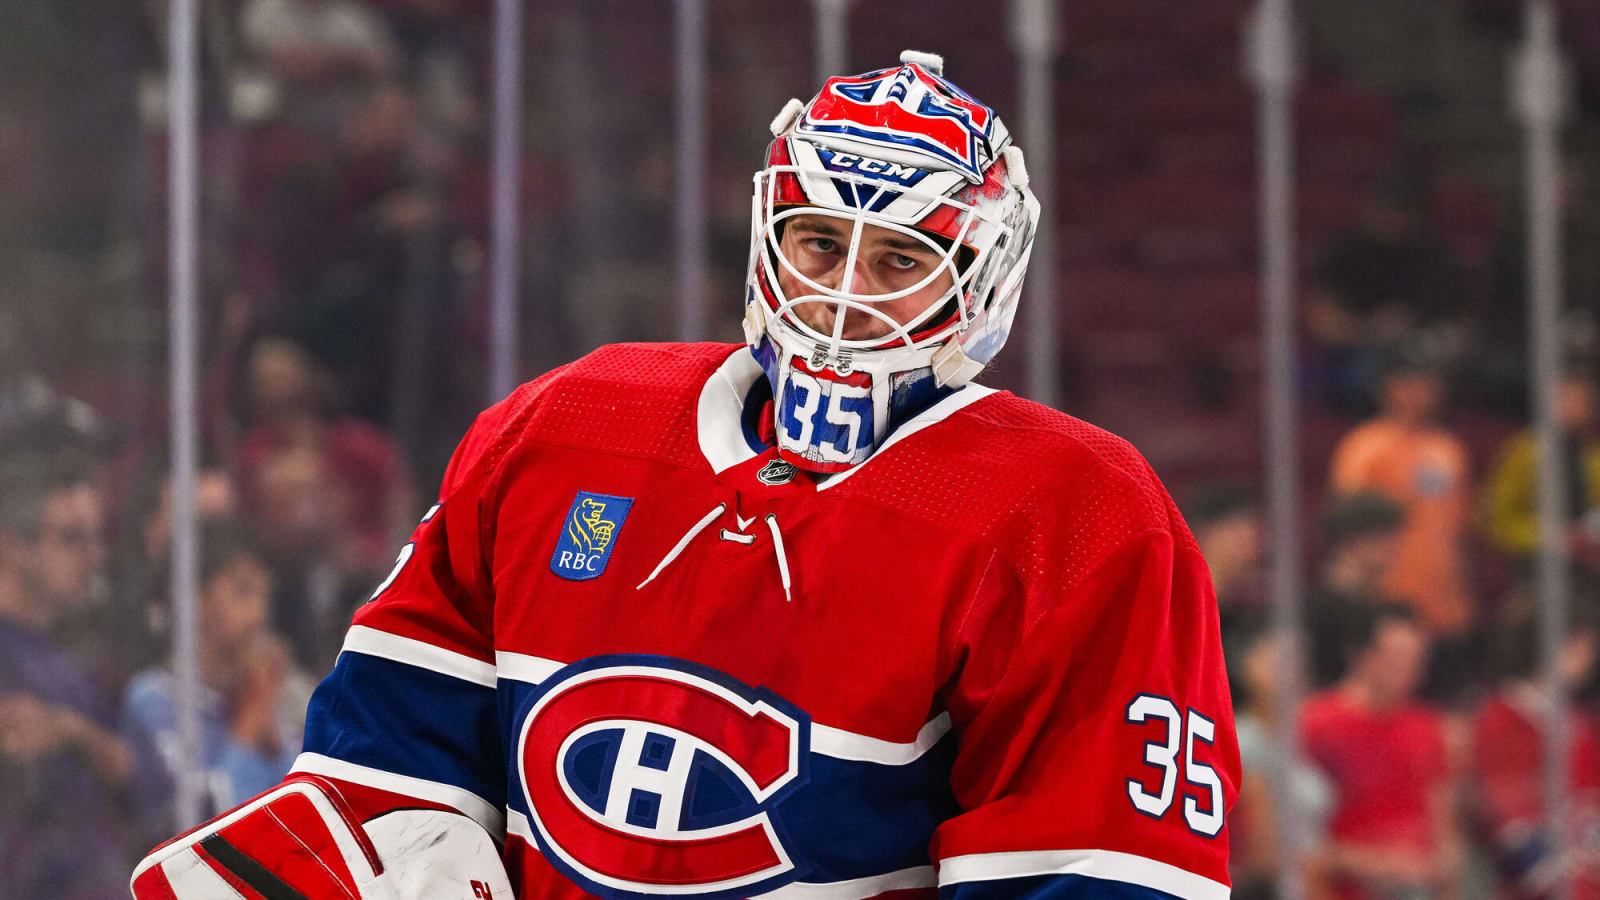 Canadiens Game 26: Montembeault Starts, Pezzetta Returns